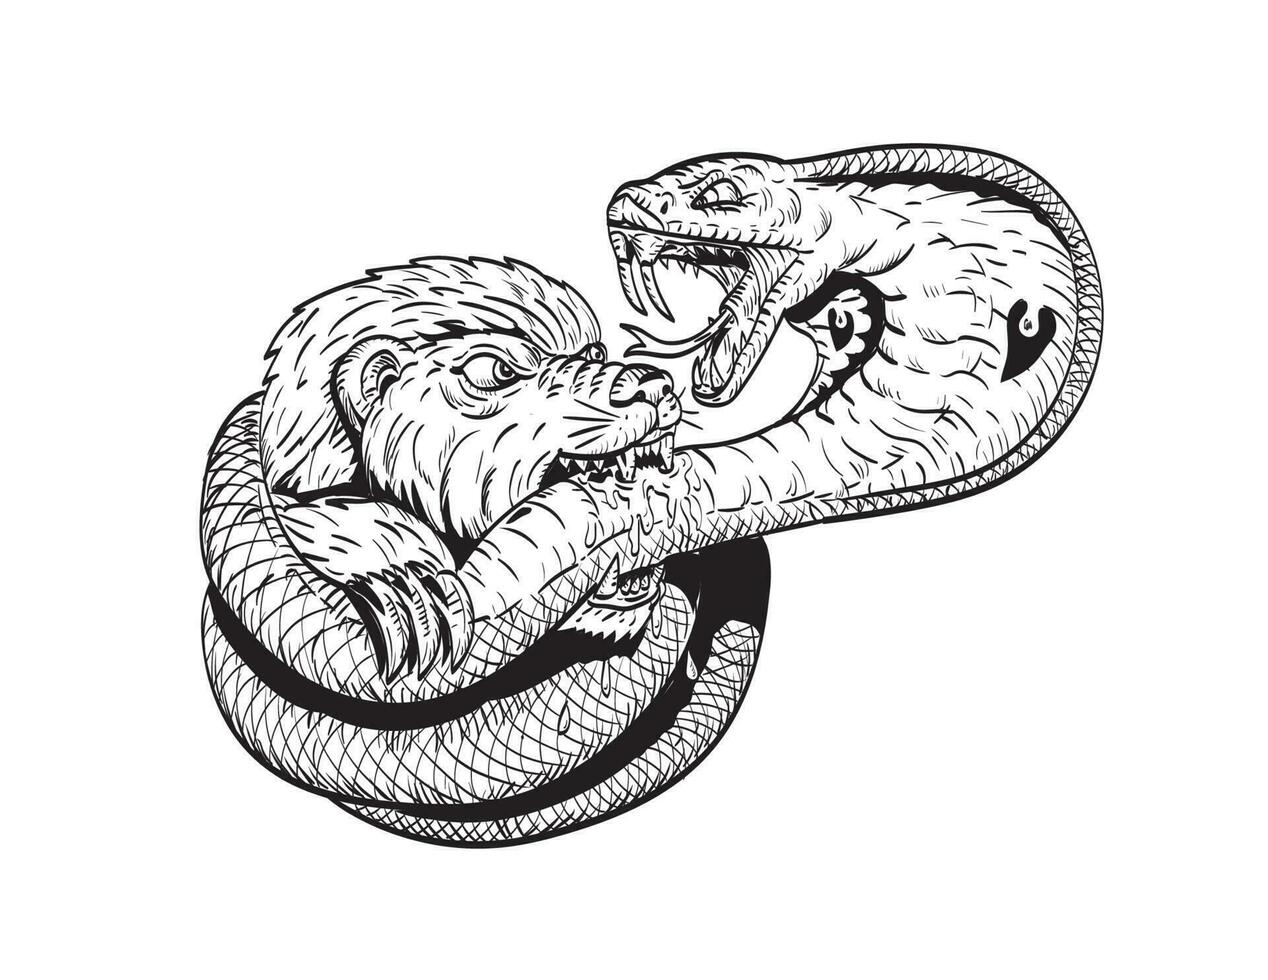 mon chéri blaireau combat mordant Roi cobra serpent des bandes dessinées style dessin vecteur